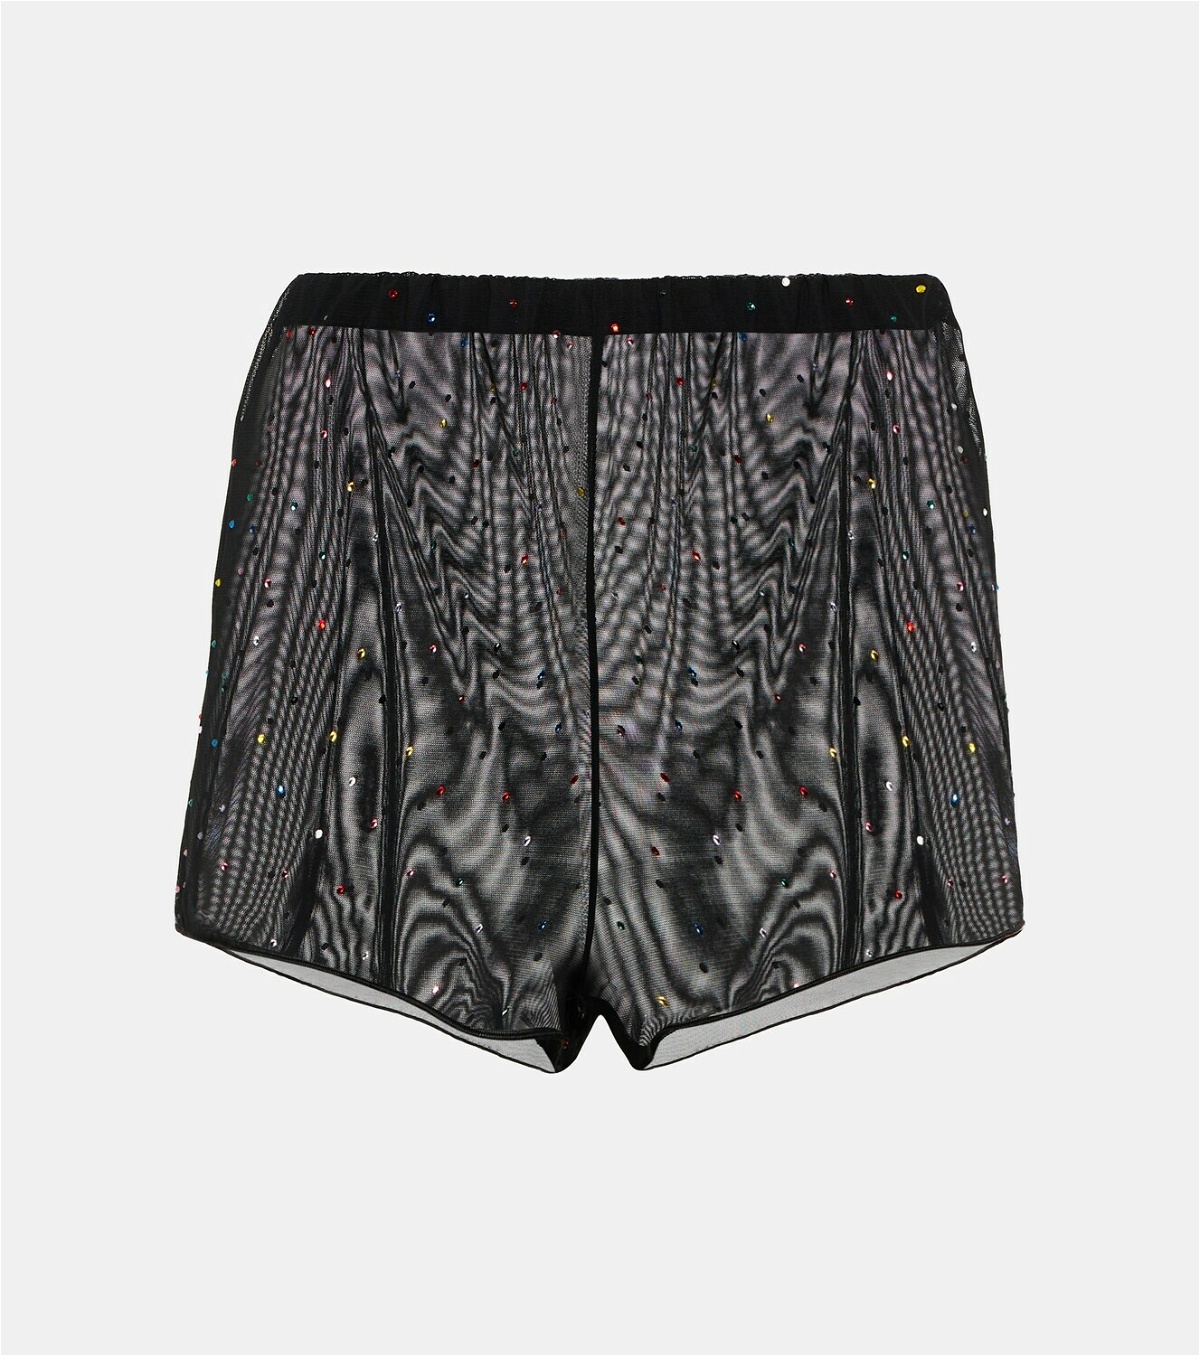 Oseree - Embellished tulle shorts